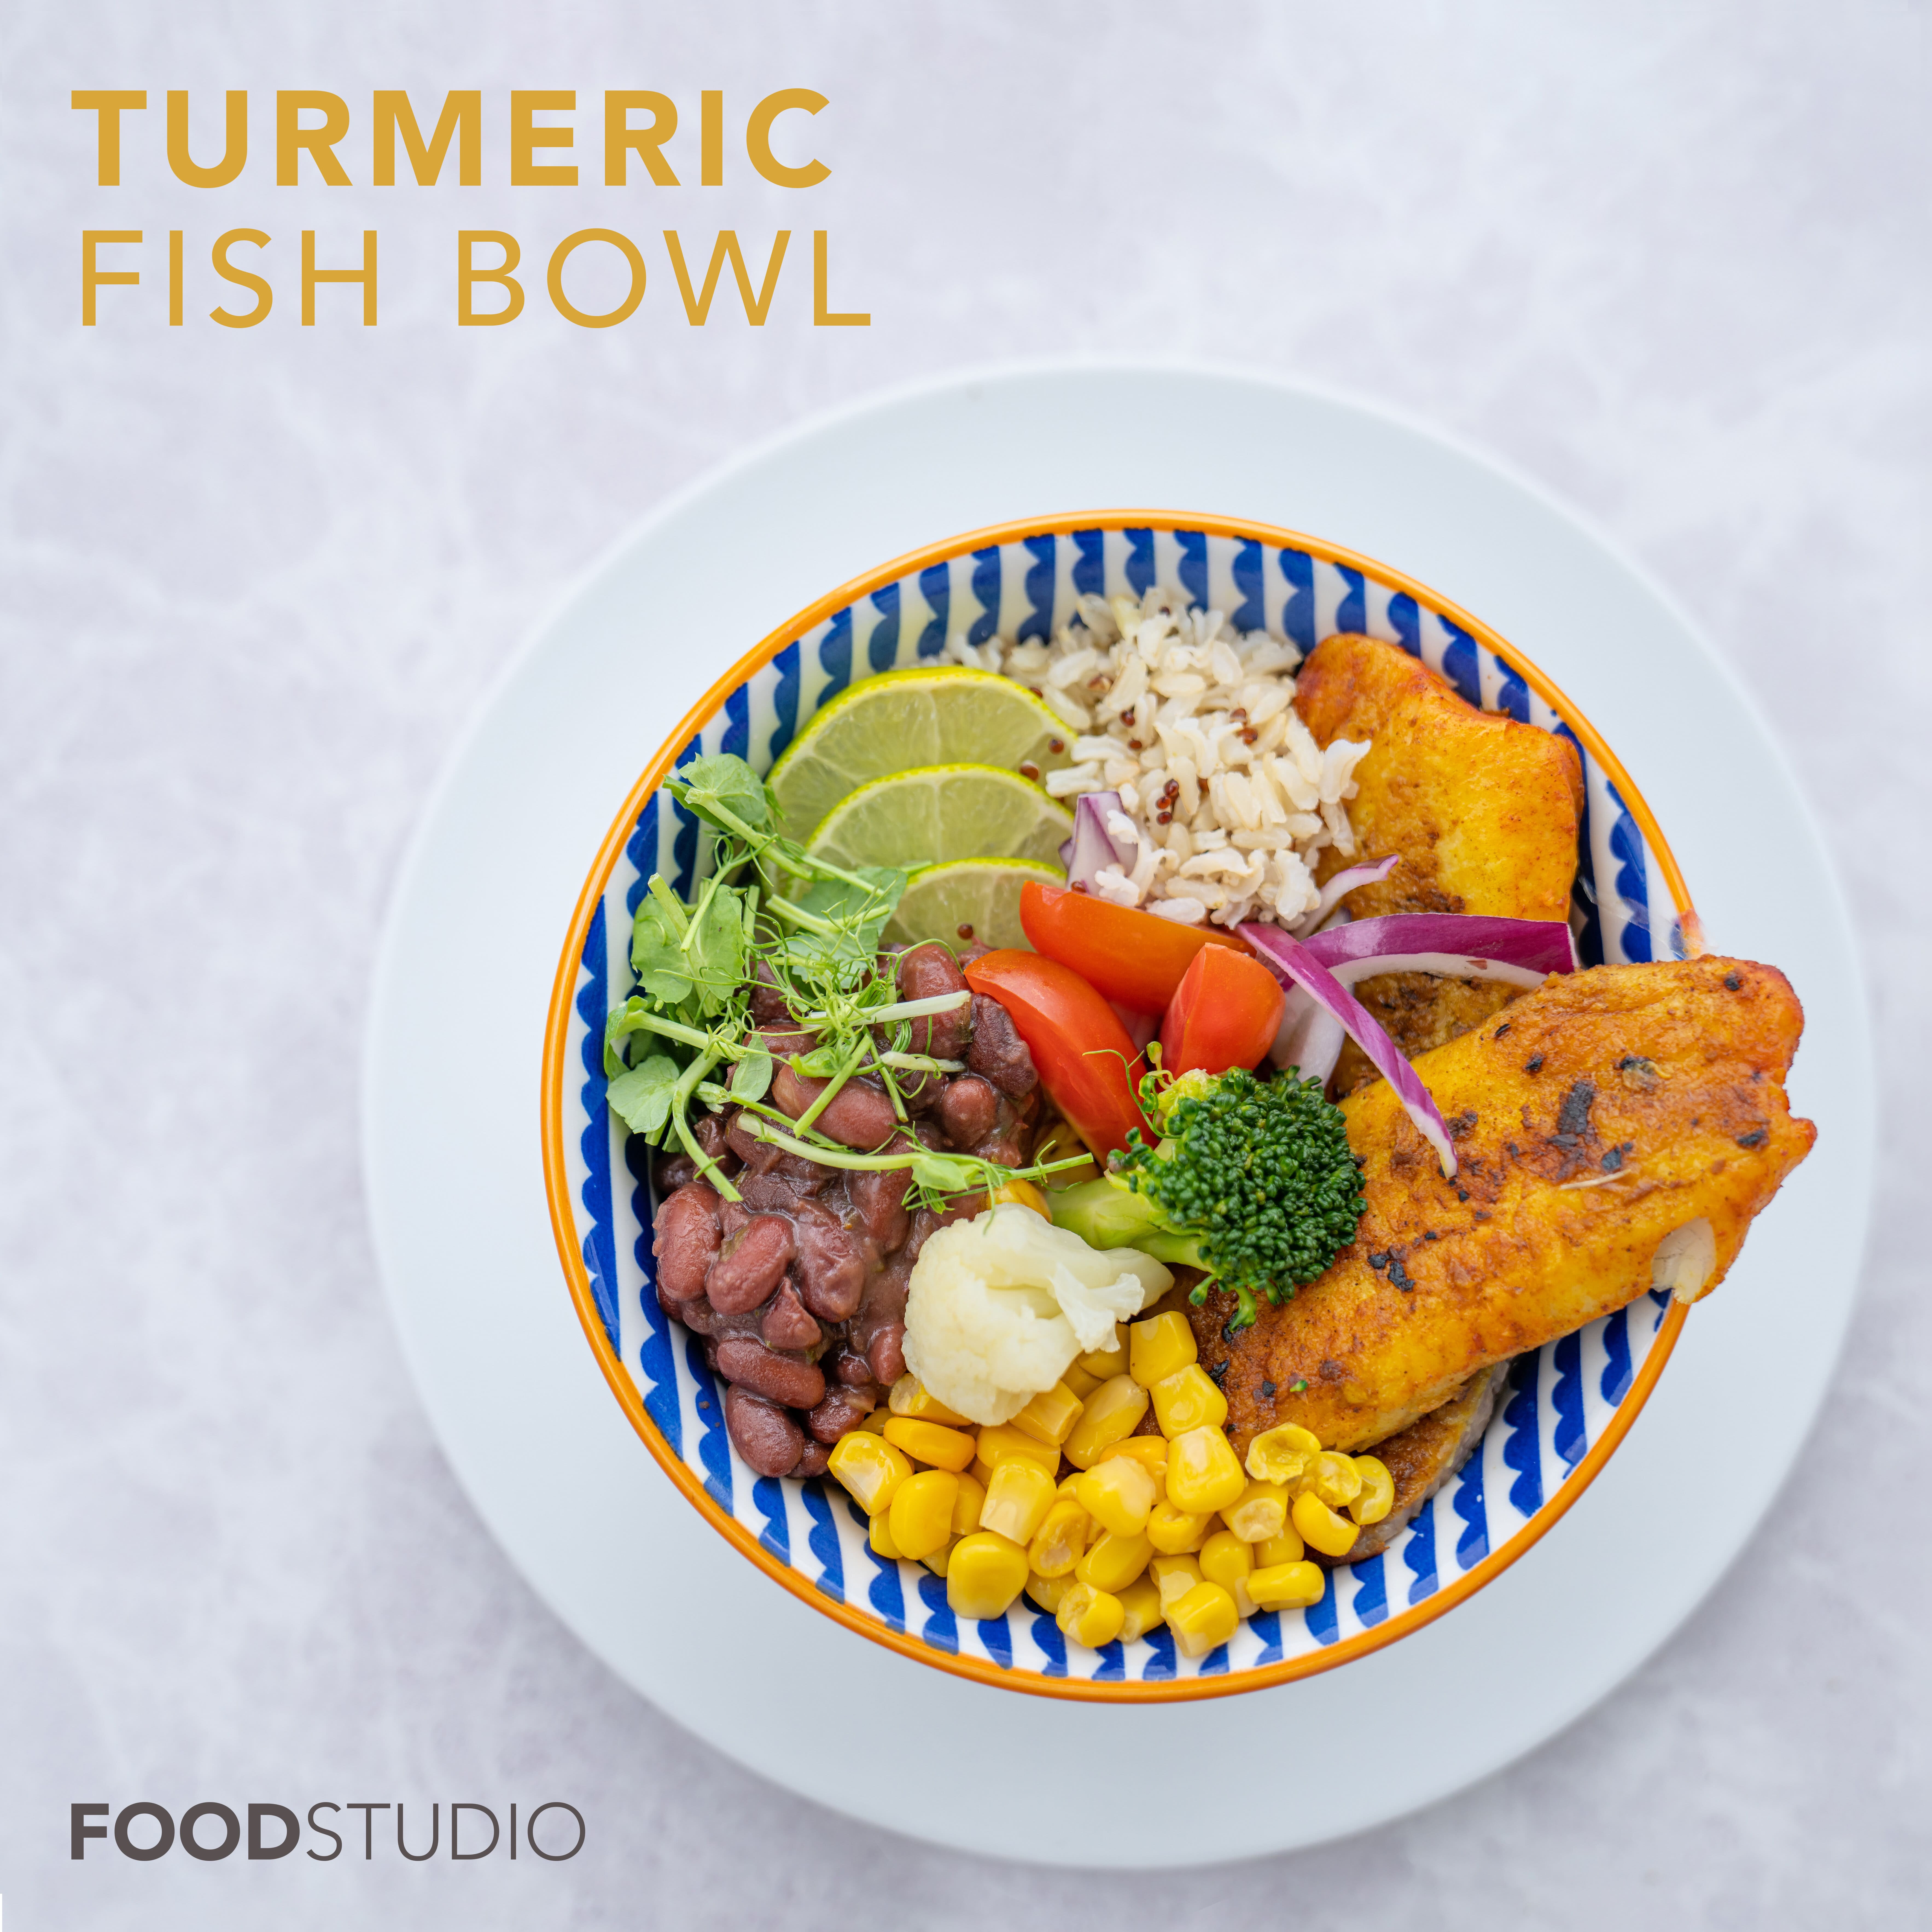 Turmeric fish bowl